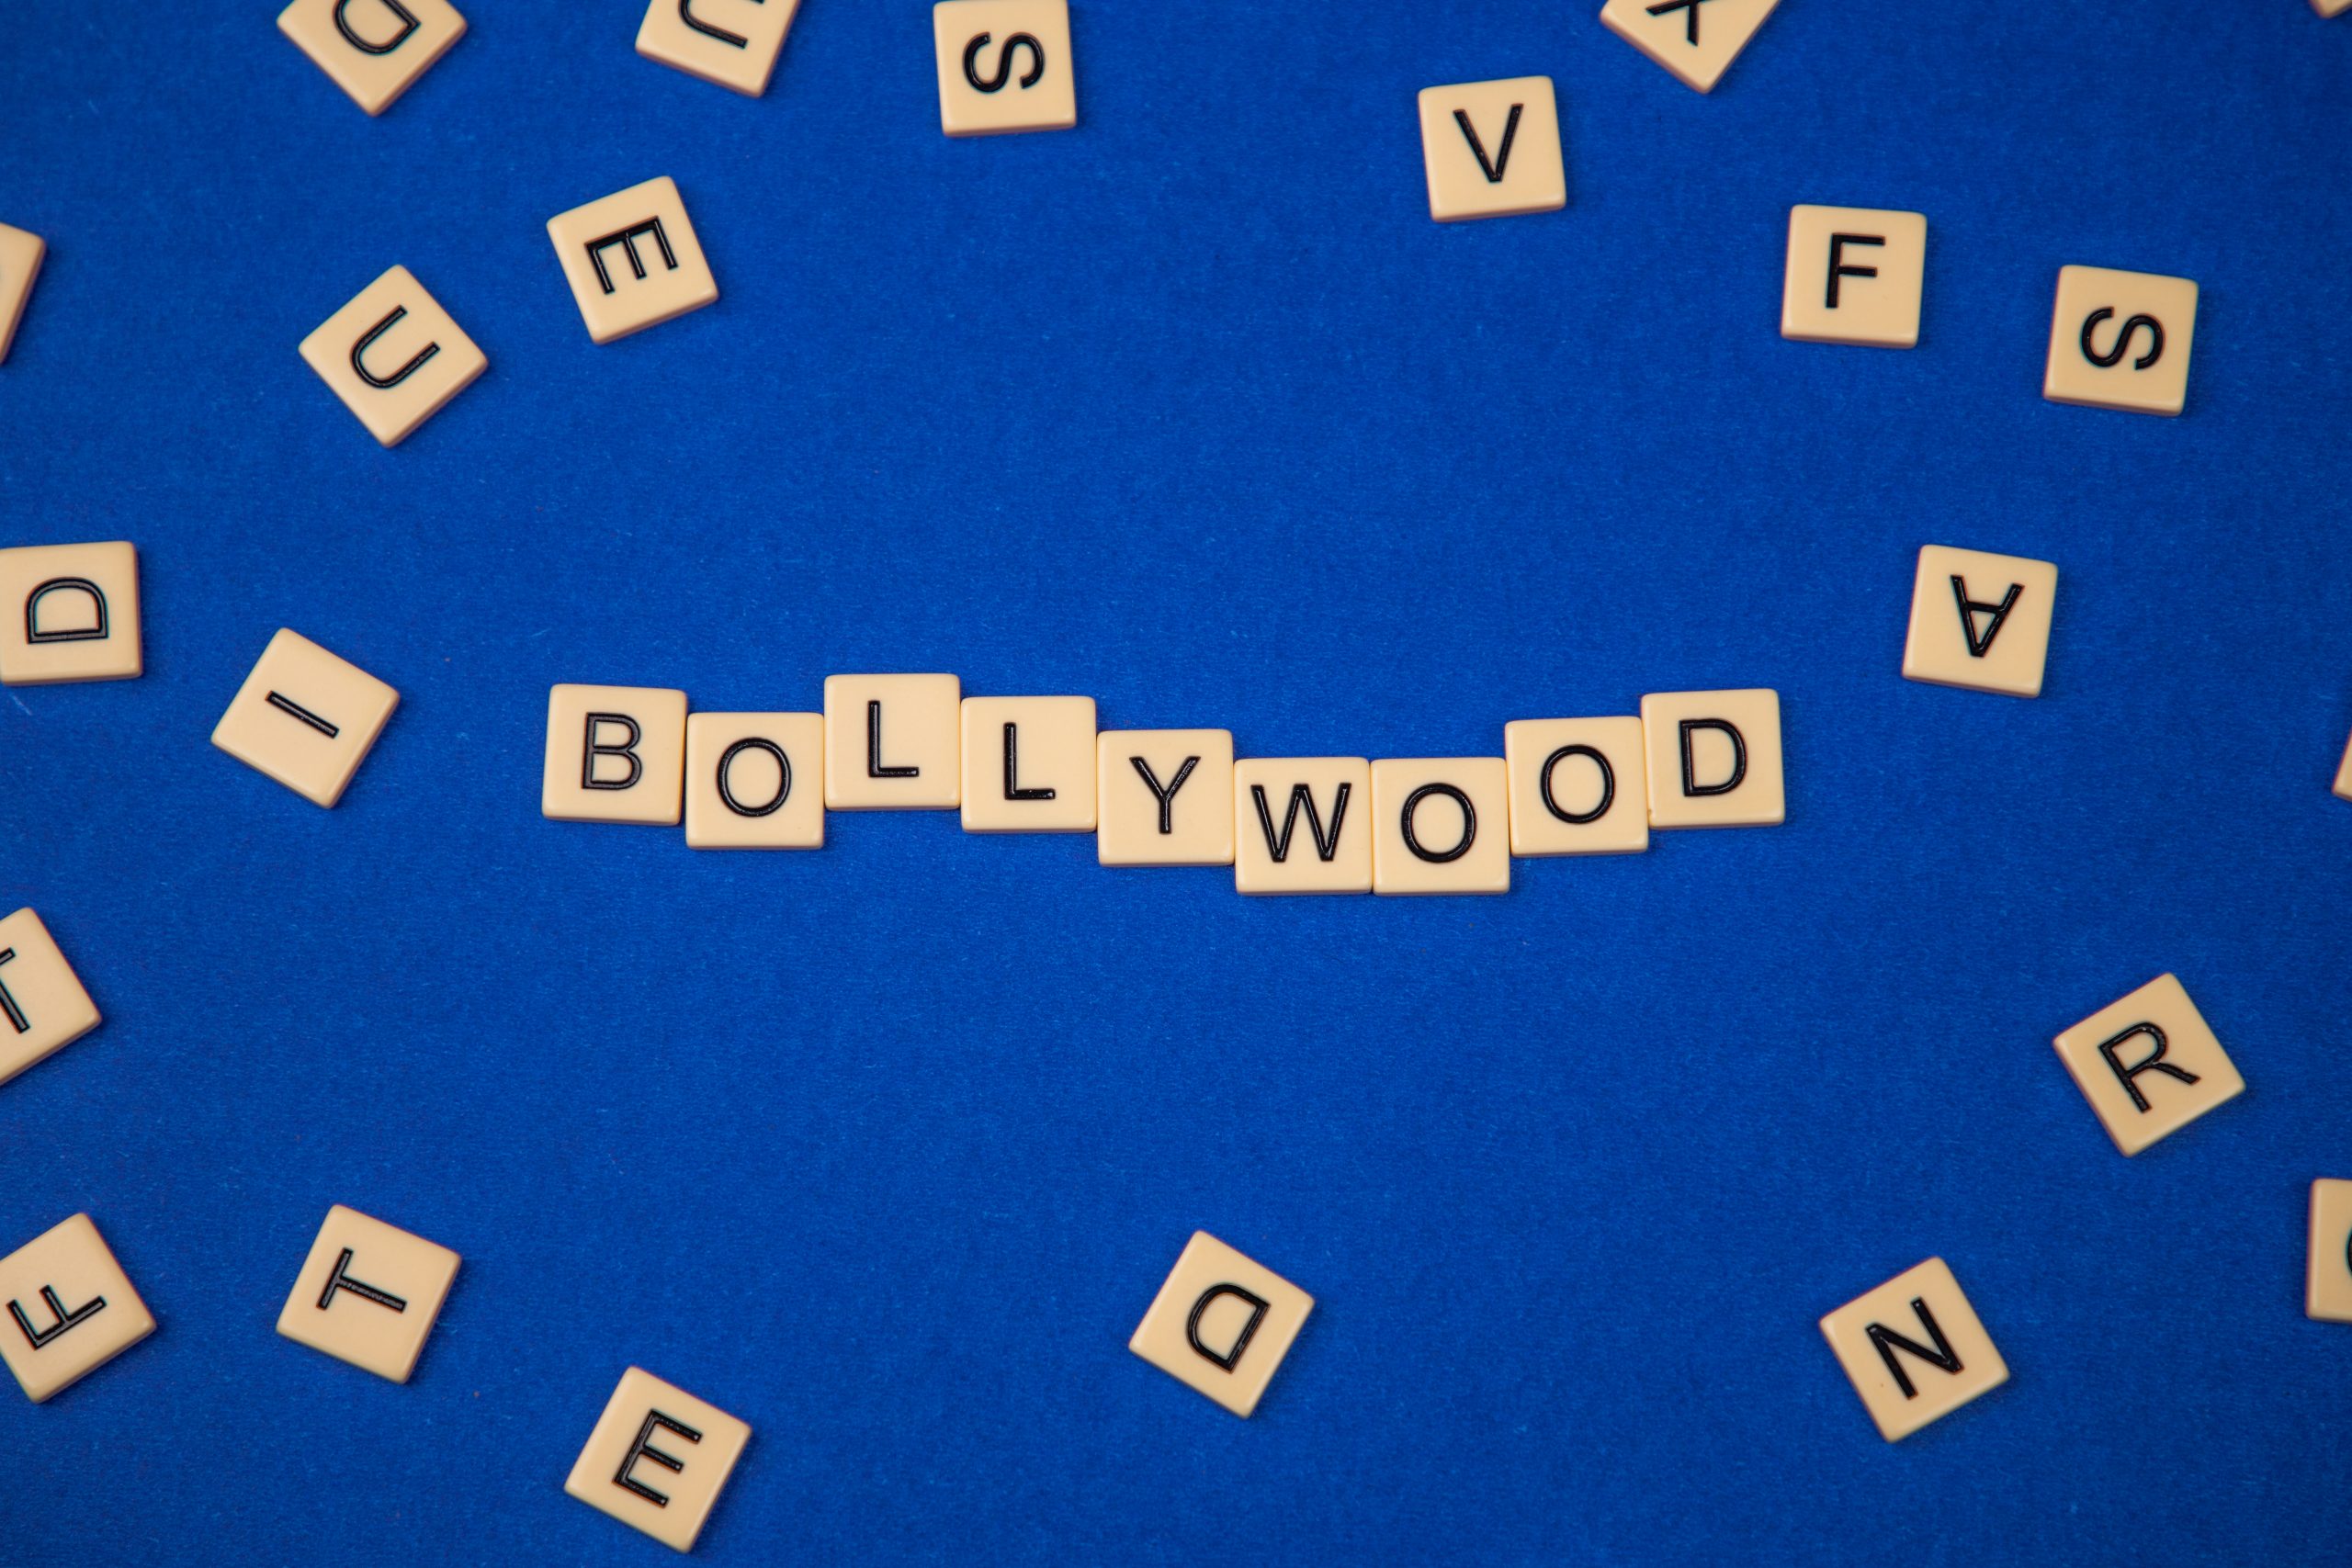 Bollywood written on scrabble